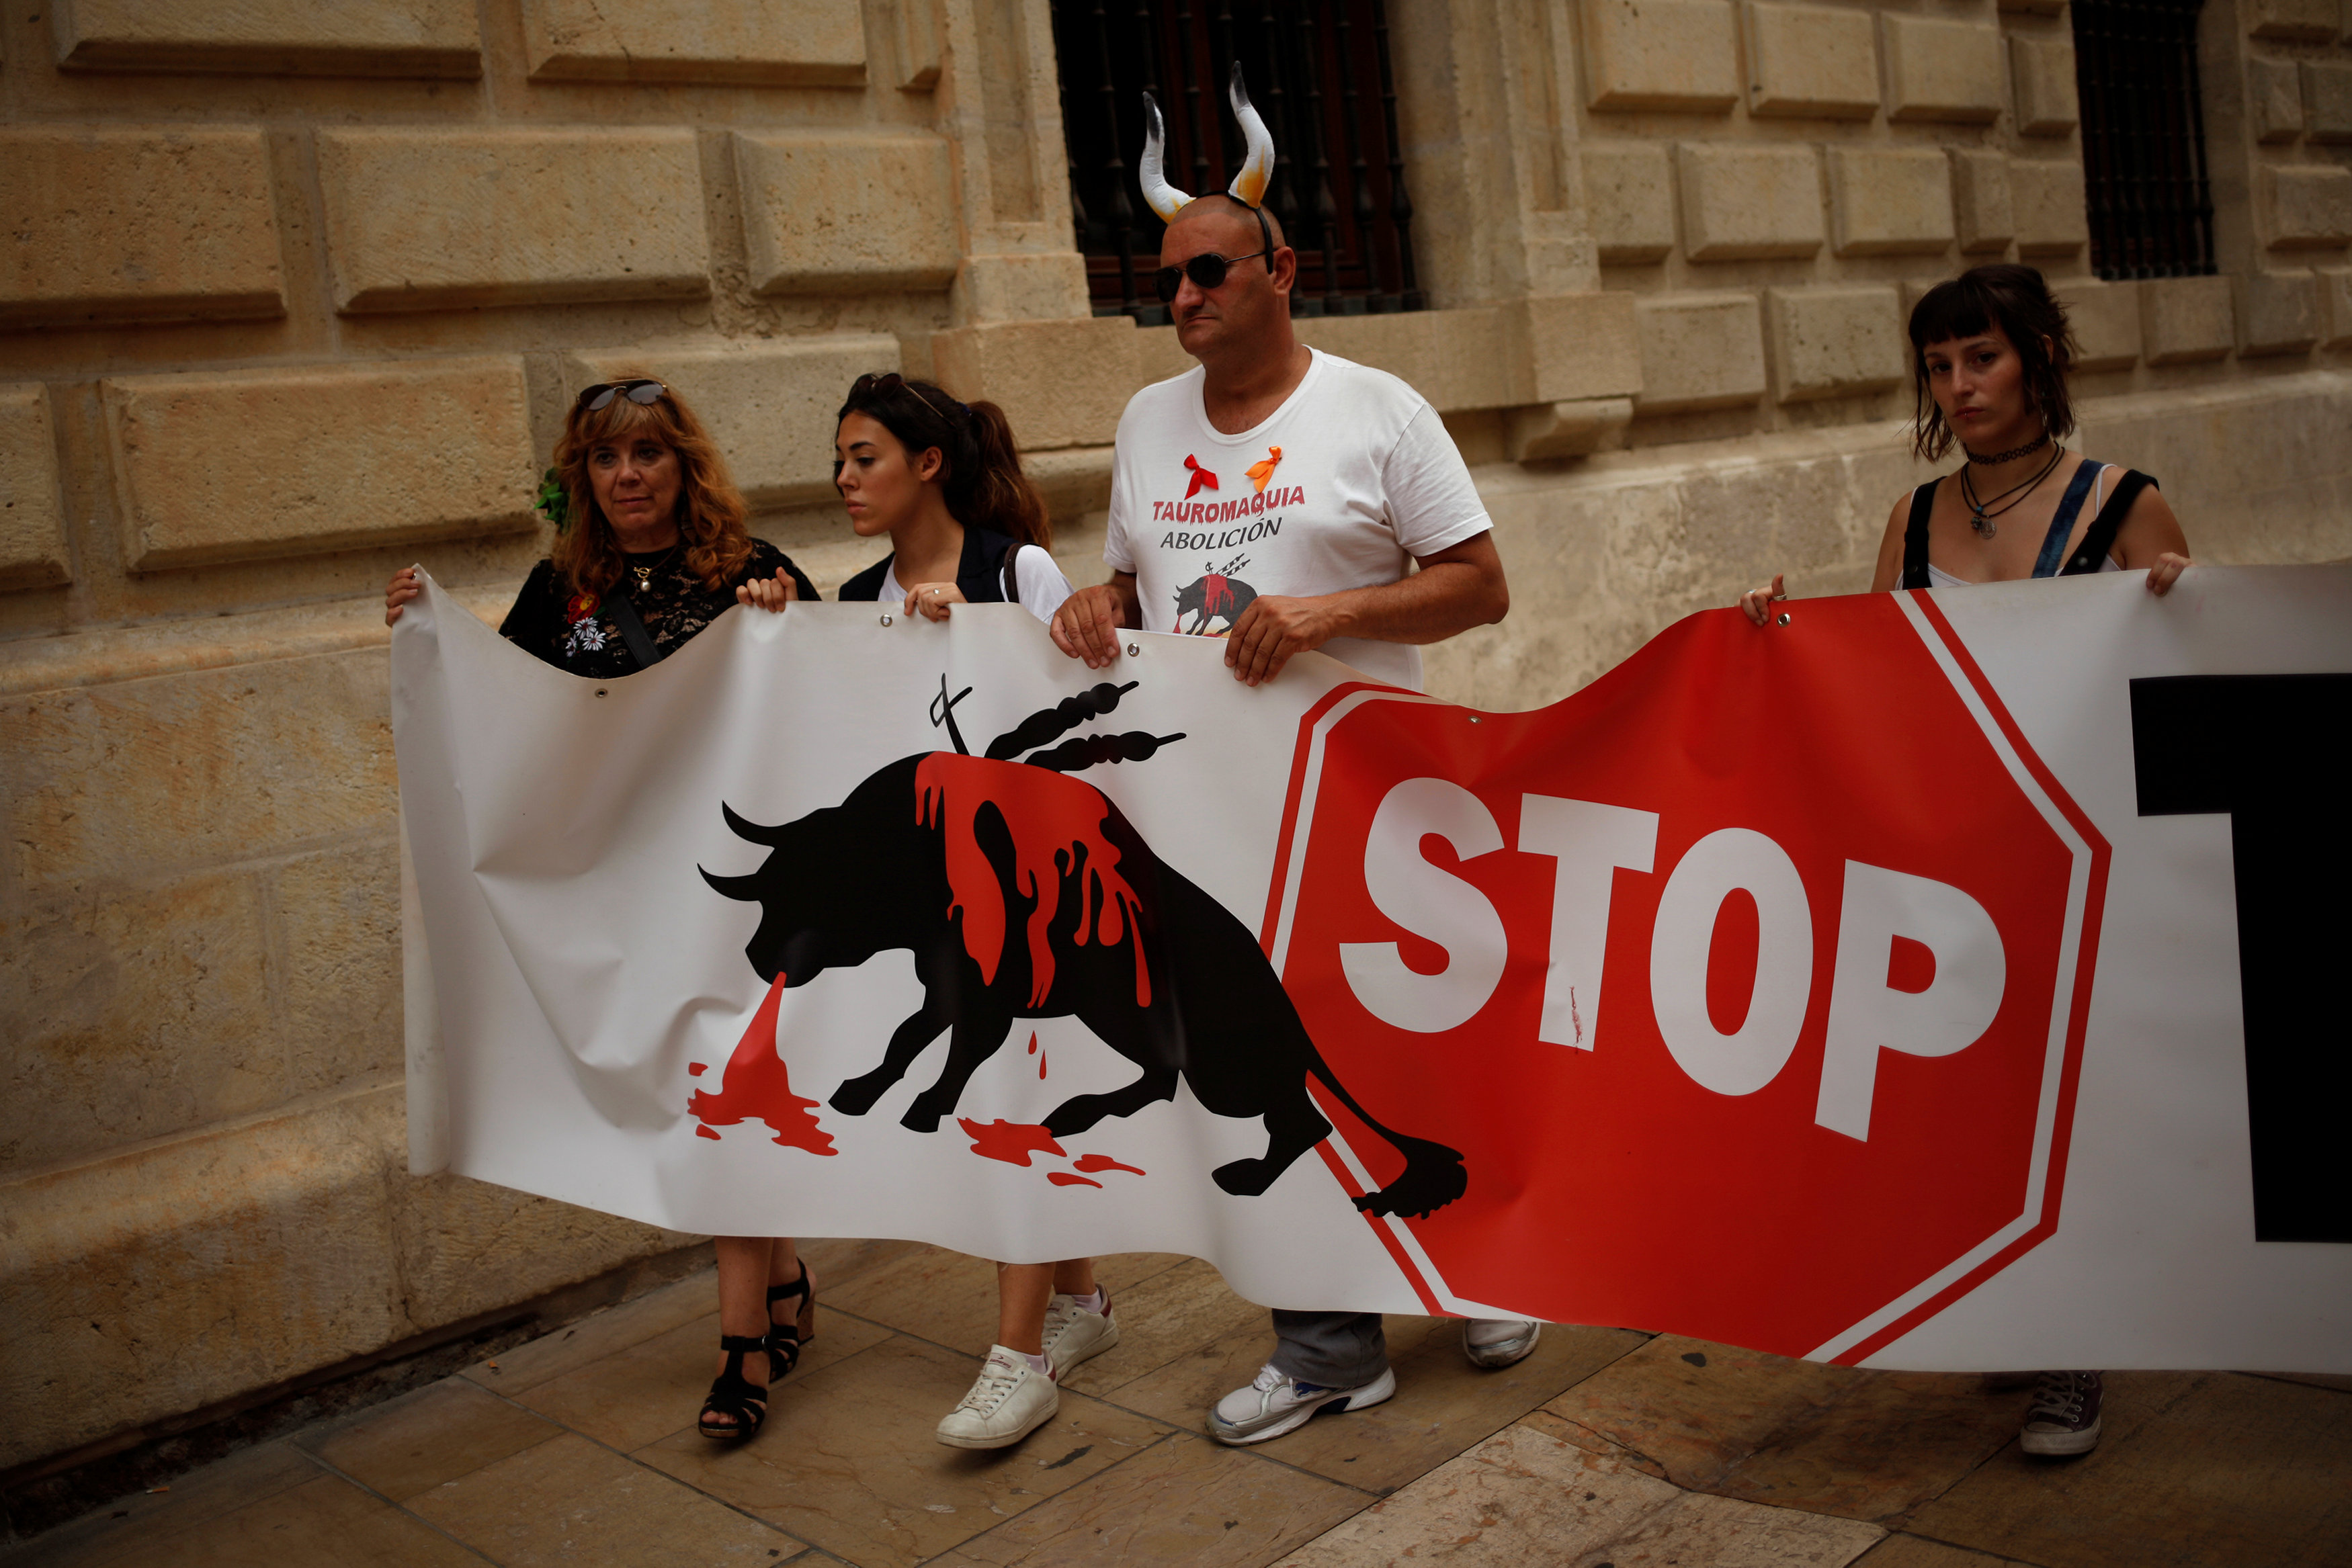 مظاهرات فى إسبانيا تطالب بحظر مصارعة الثيران